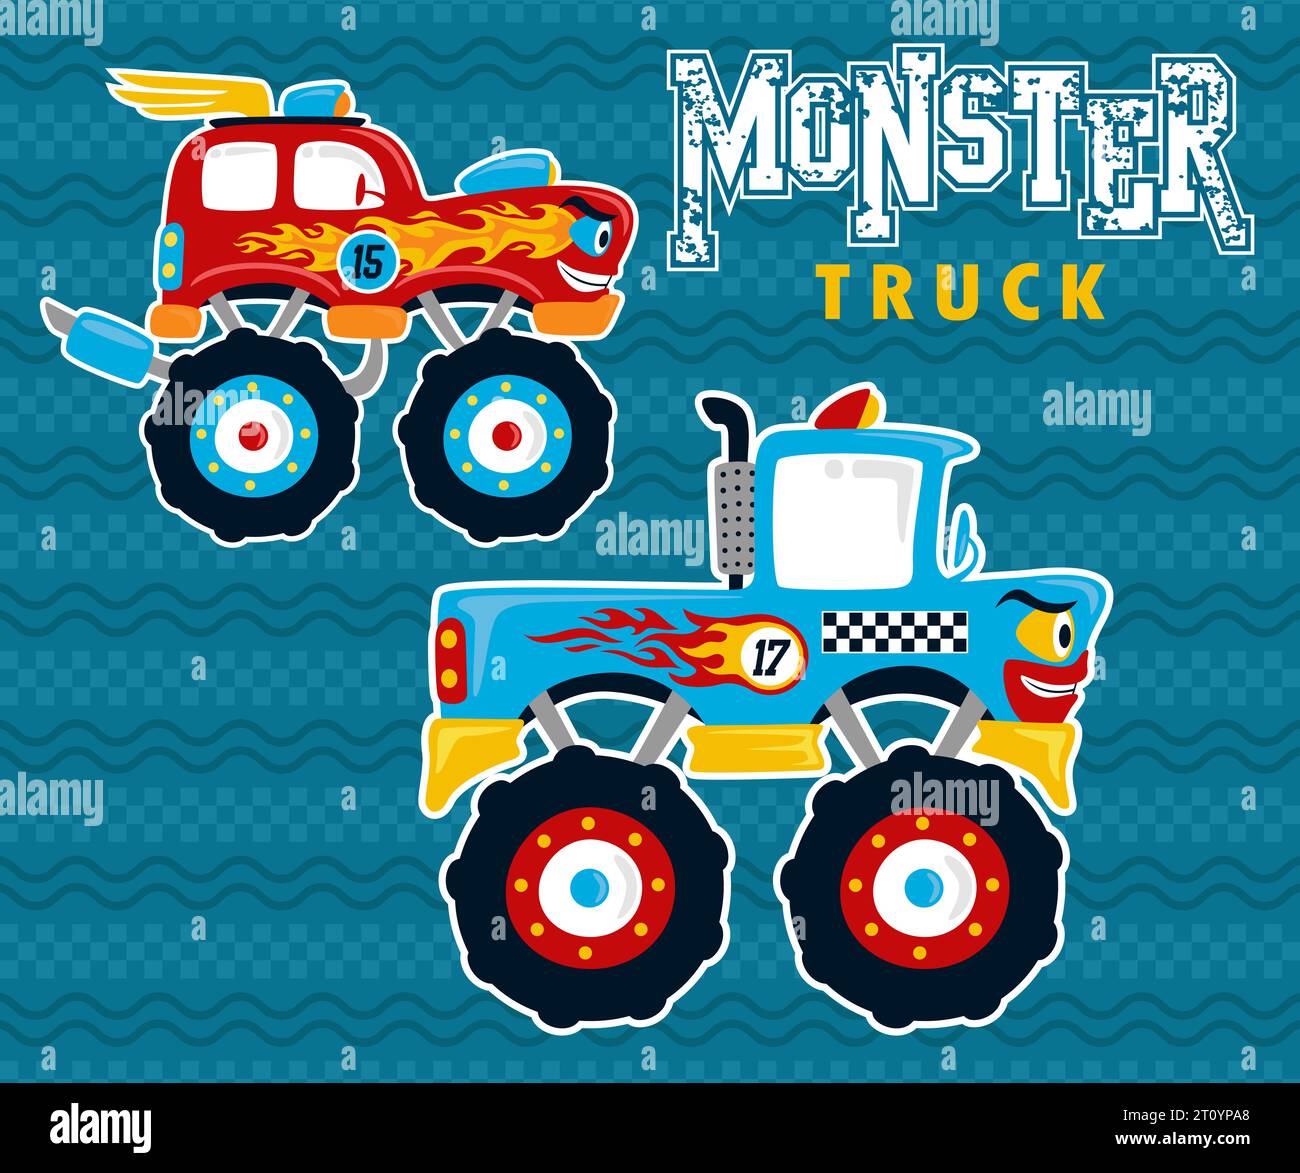 Monster truck race cartoon. Vector cartoon illustration Stock Vector